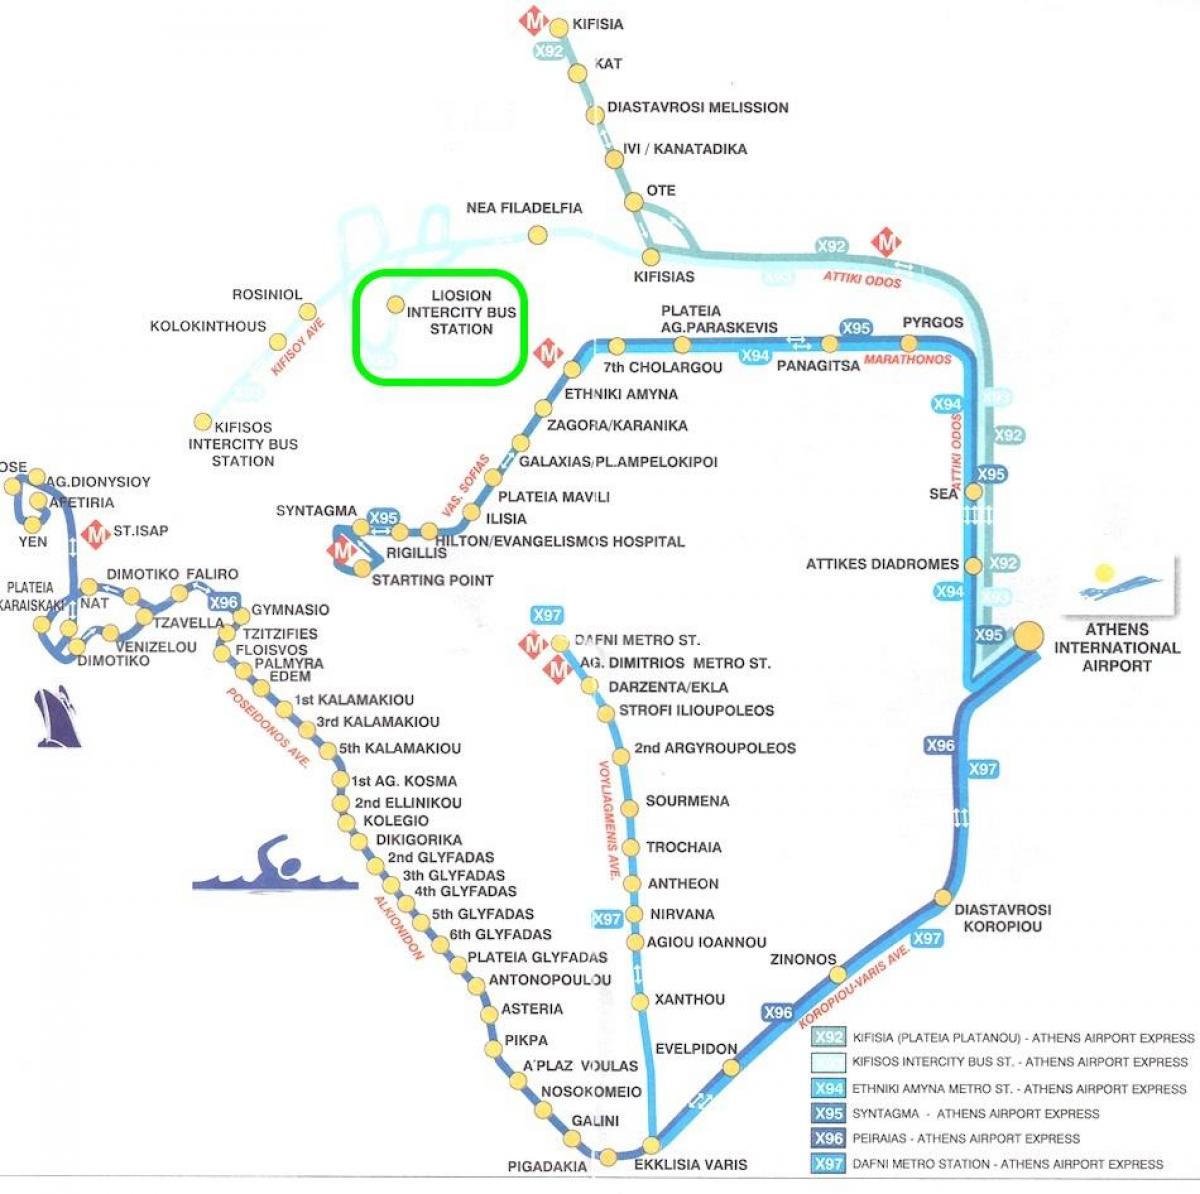 mappa di liosion stazione degli autobus di Atene 